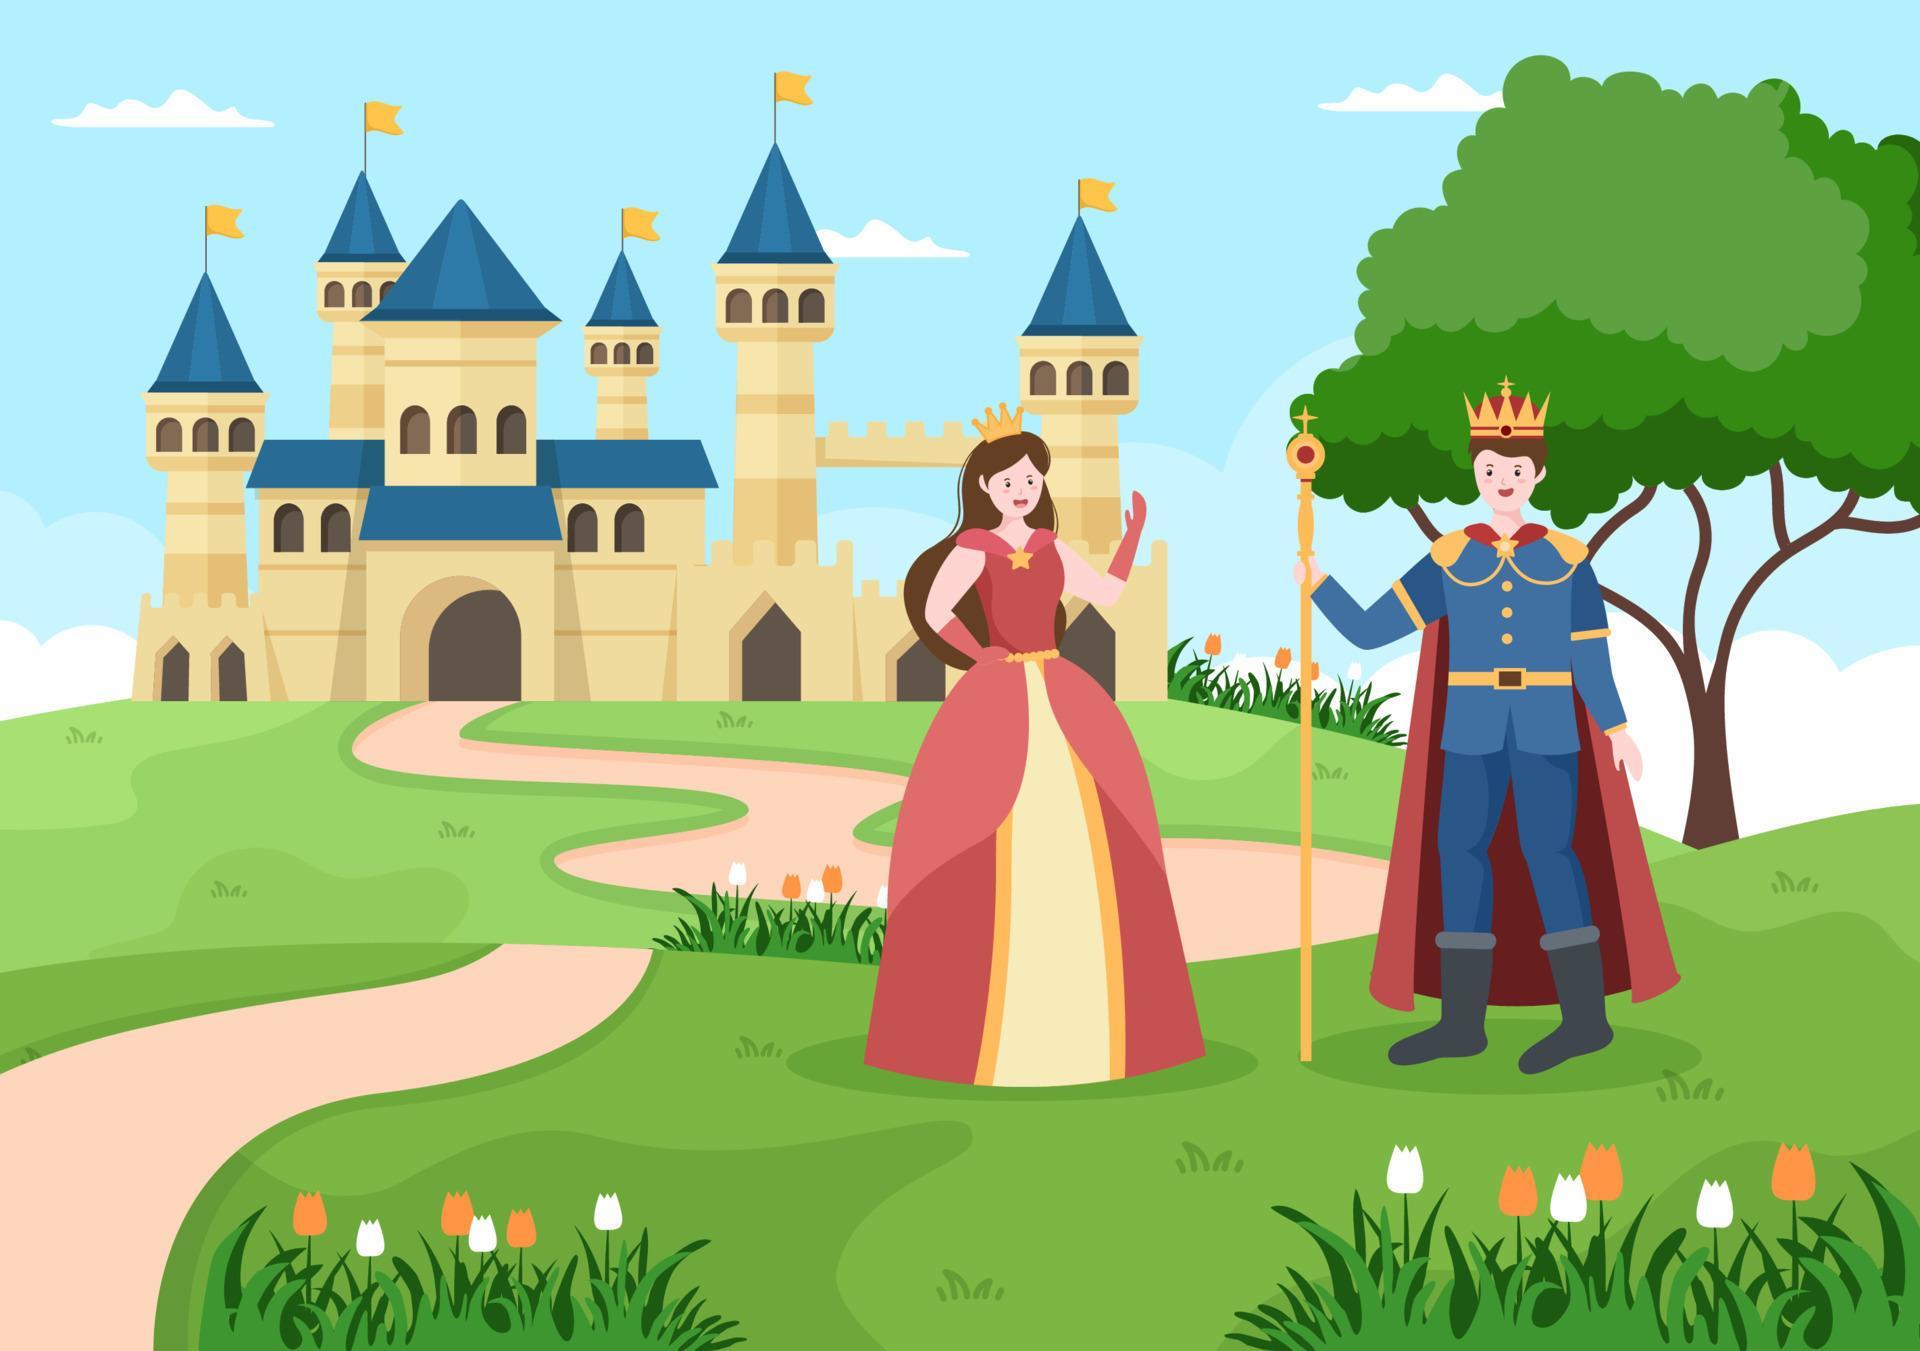 prins och drottning framför slottet med majestätisk palatsarkitektur och sagoliknande skogslandskap i tecknad platt stilillustration vektor